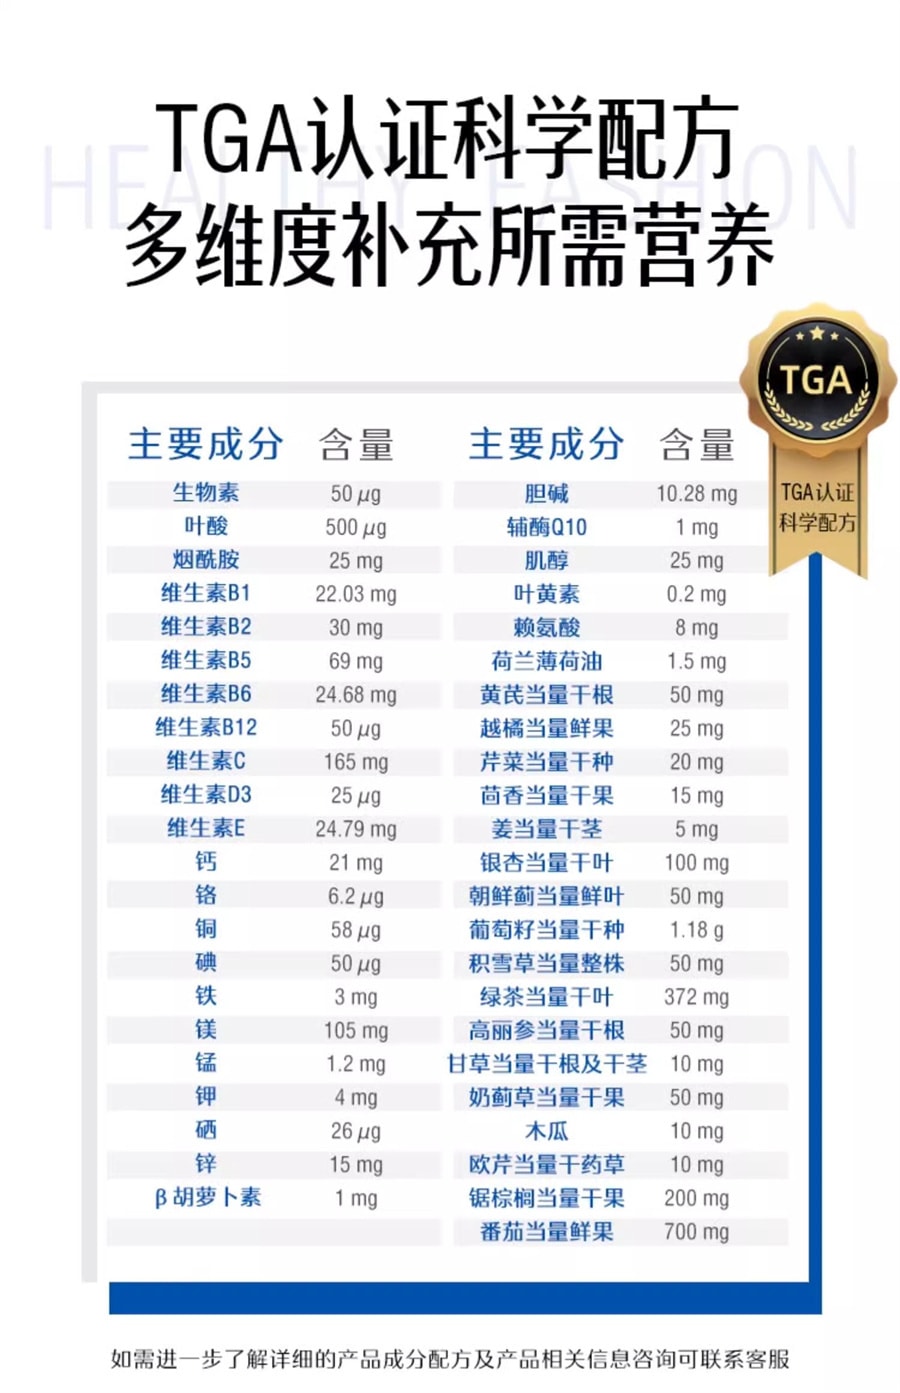 【中國直郵】Swisse斯維詩 男士複合維生素多重營養元素提升活力重塑體魄 120片/罐